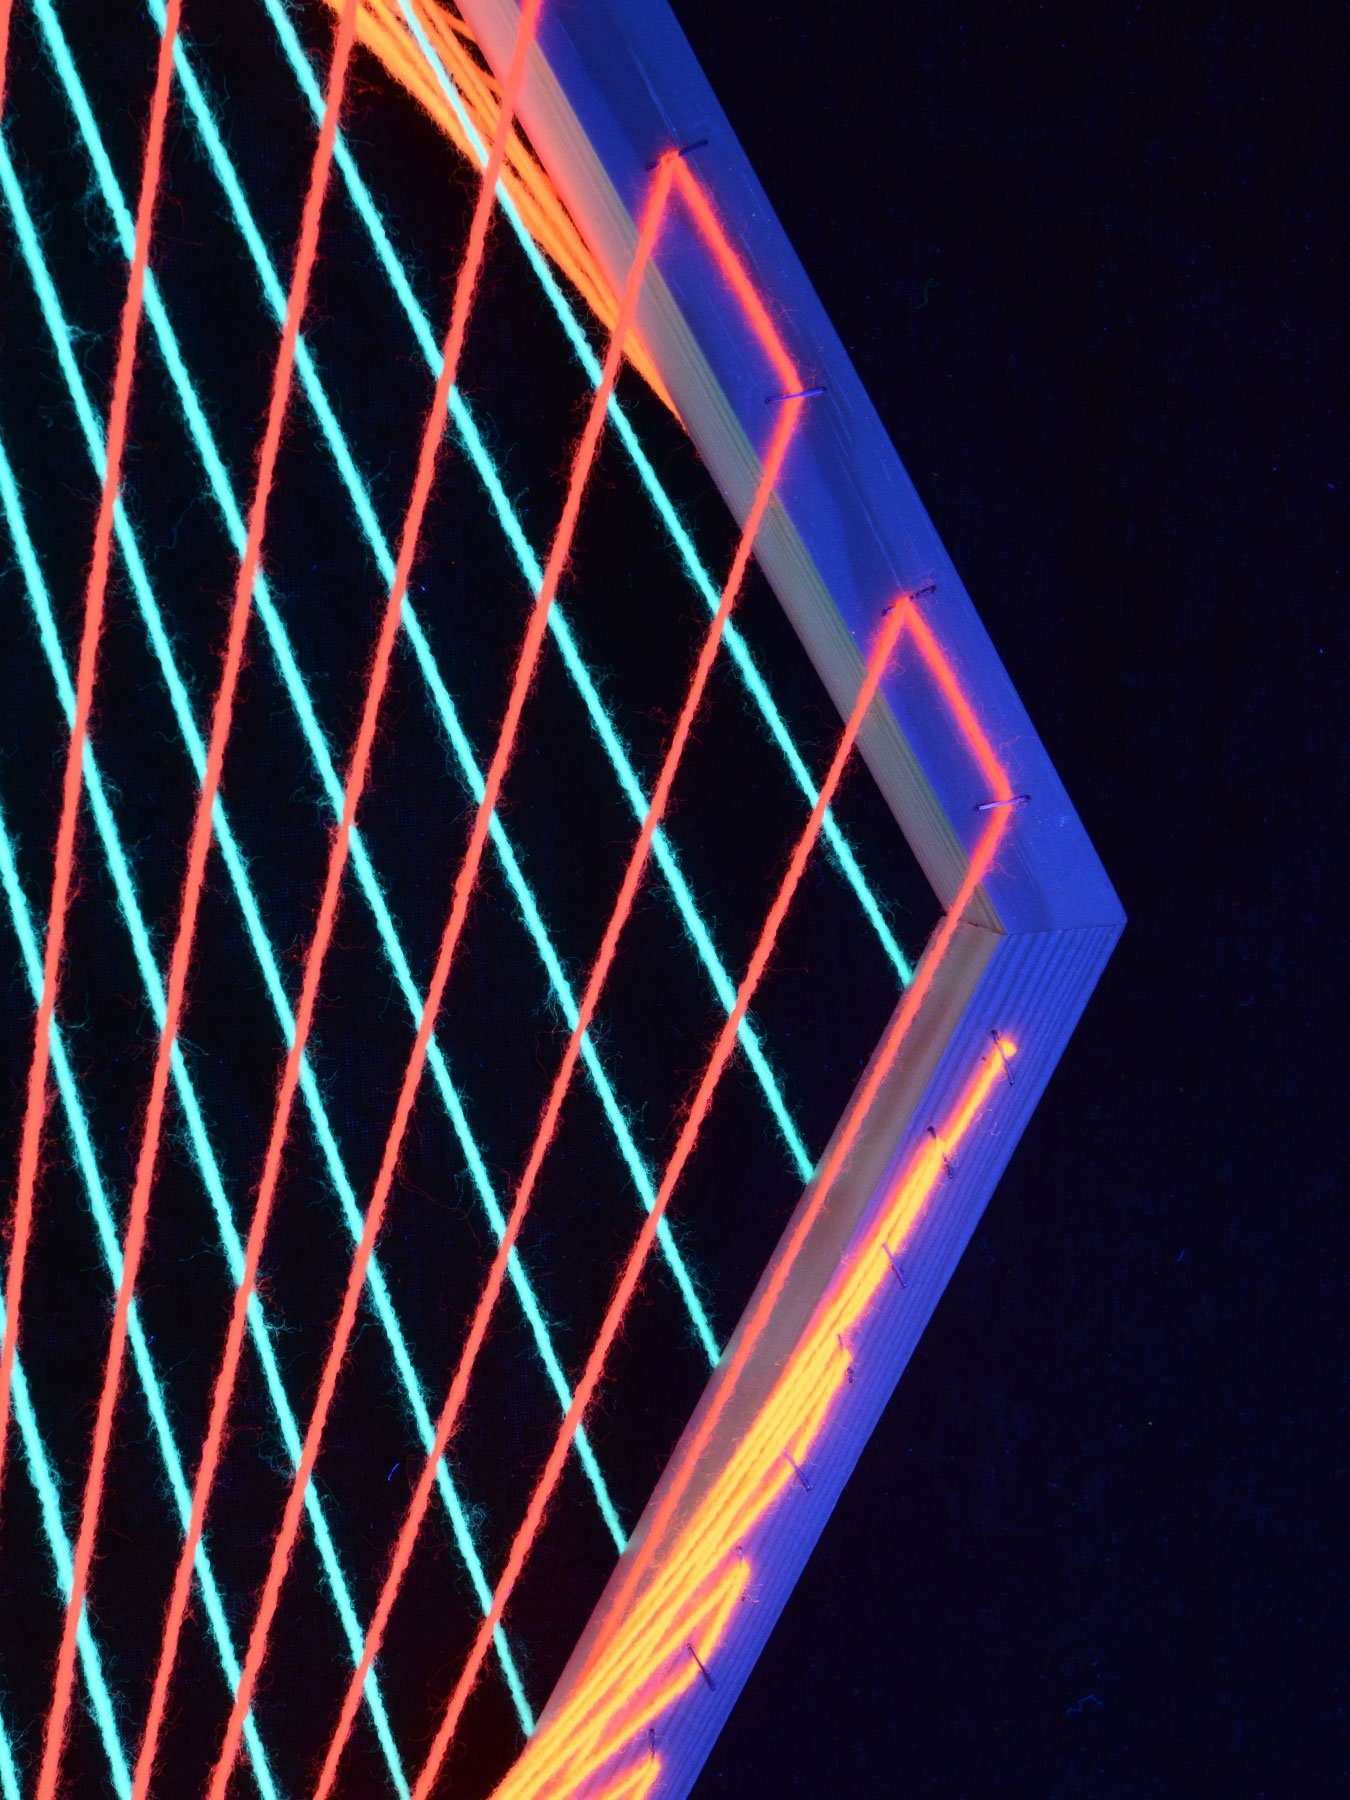 "Neon II", Schwarzlicht Dekoobjekt 3D Eye PSYWORK Schwarzlicht unter UV-aktiv, All-Seeing leuchtet Raute StringArt 88x53cm,